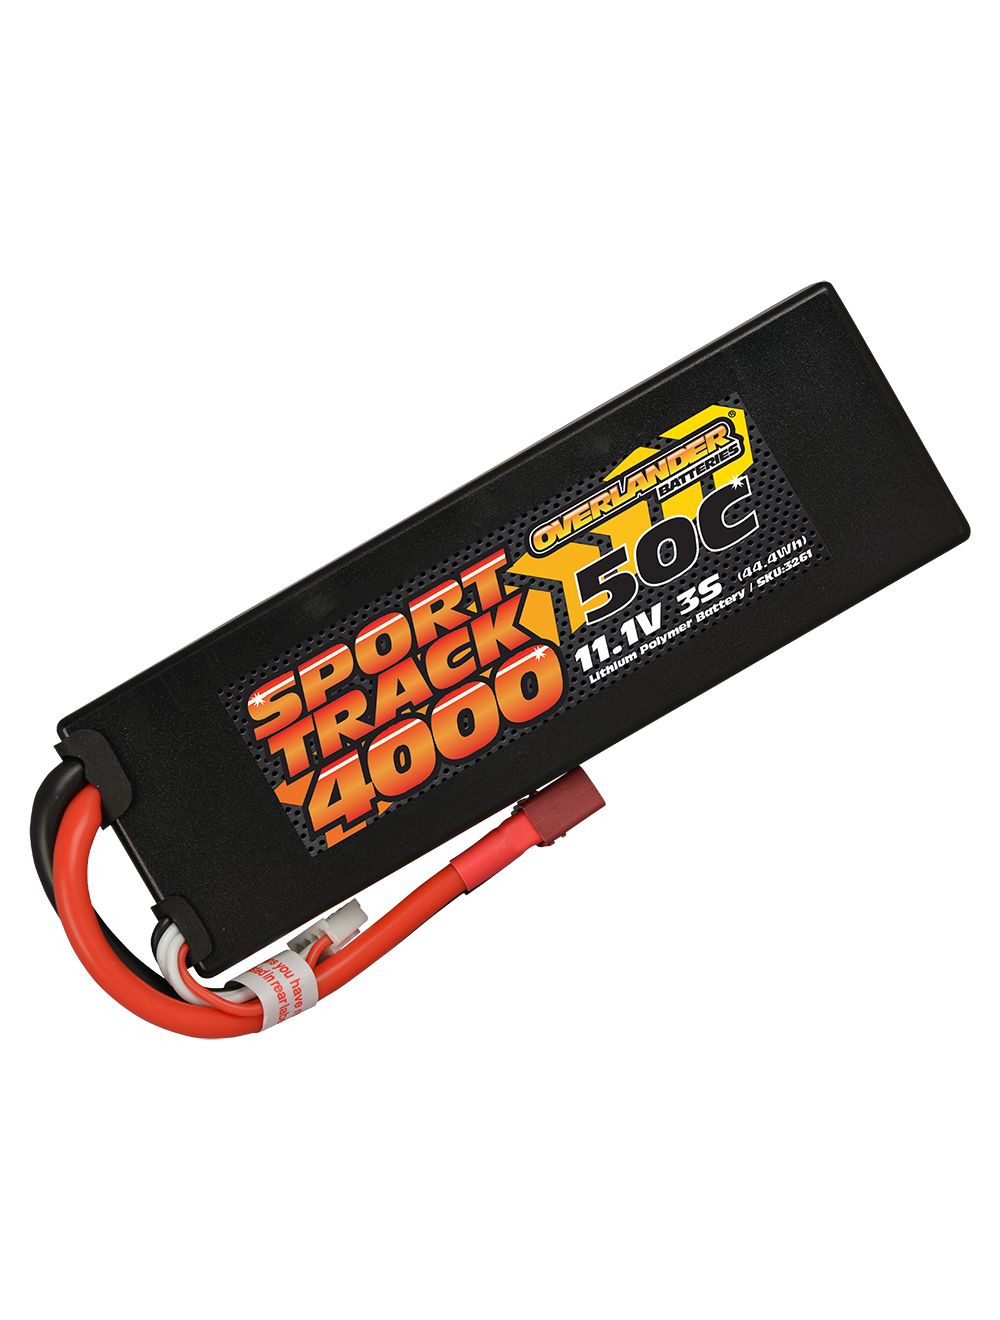 Overlander 4000mAh 11.1V 3S 50C Hard Case Sport Track LiPo Battery - Deans Connector 3261